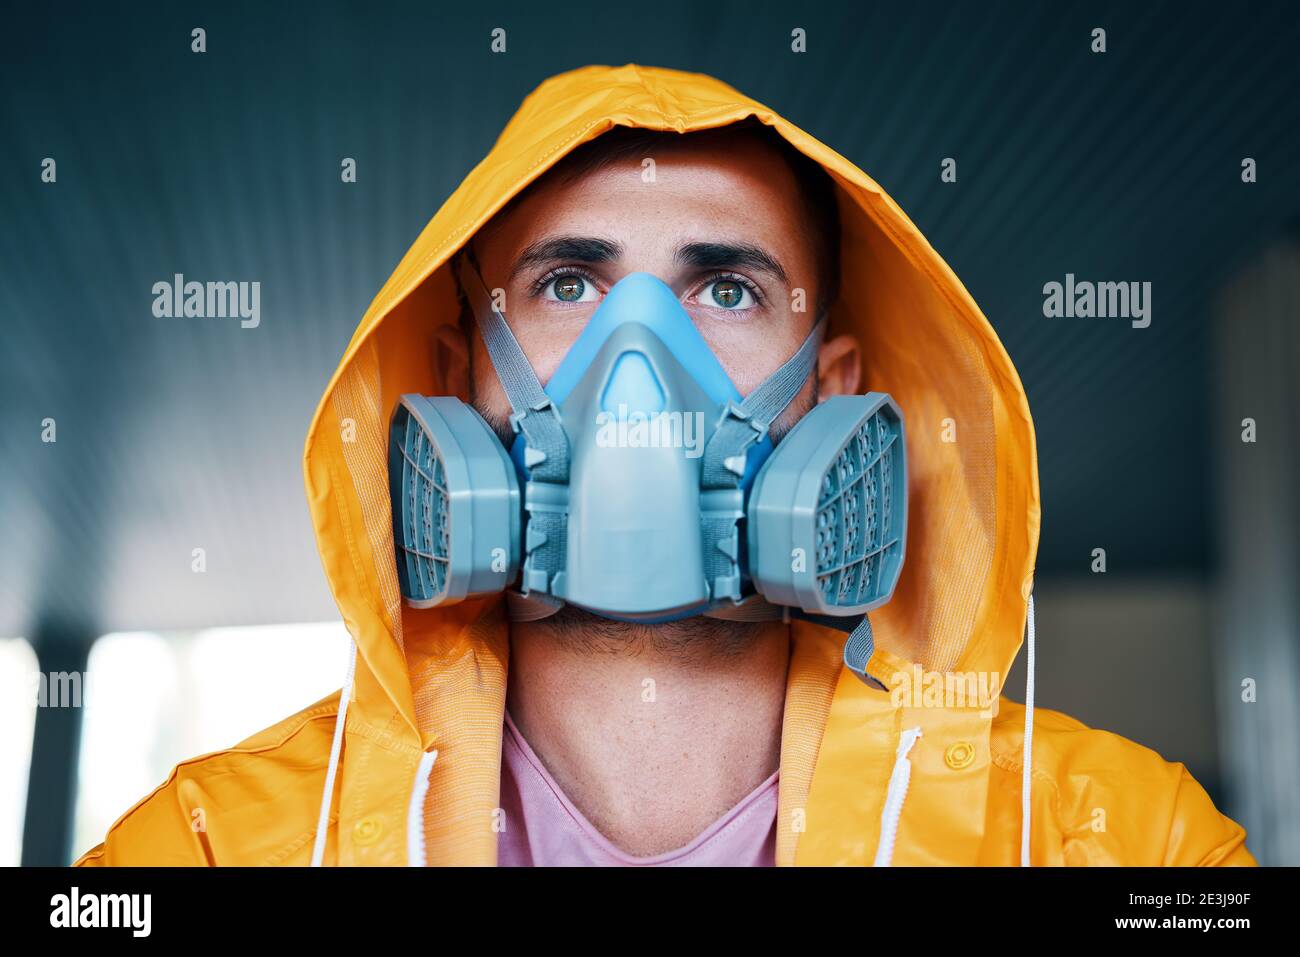 Gros plan du jeune homme dans un masque respiratoire et imperméable jaune posé dans la rue et regardant la caméra Banque D'Images